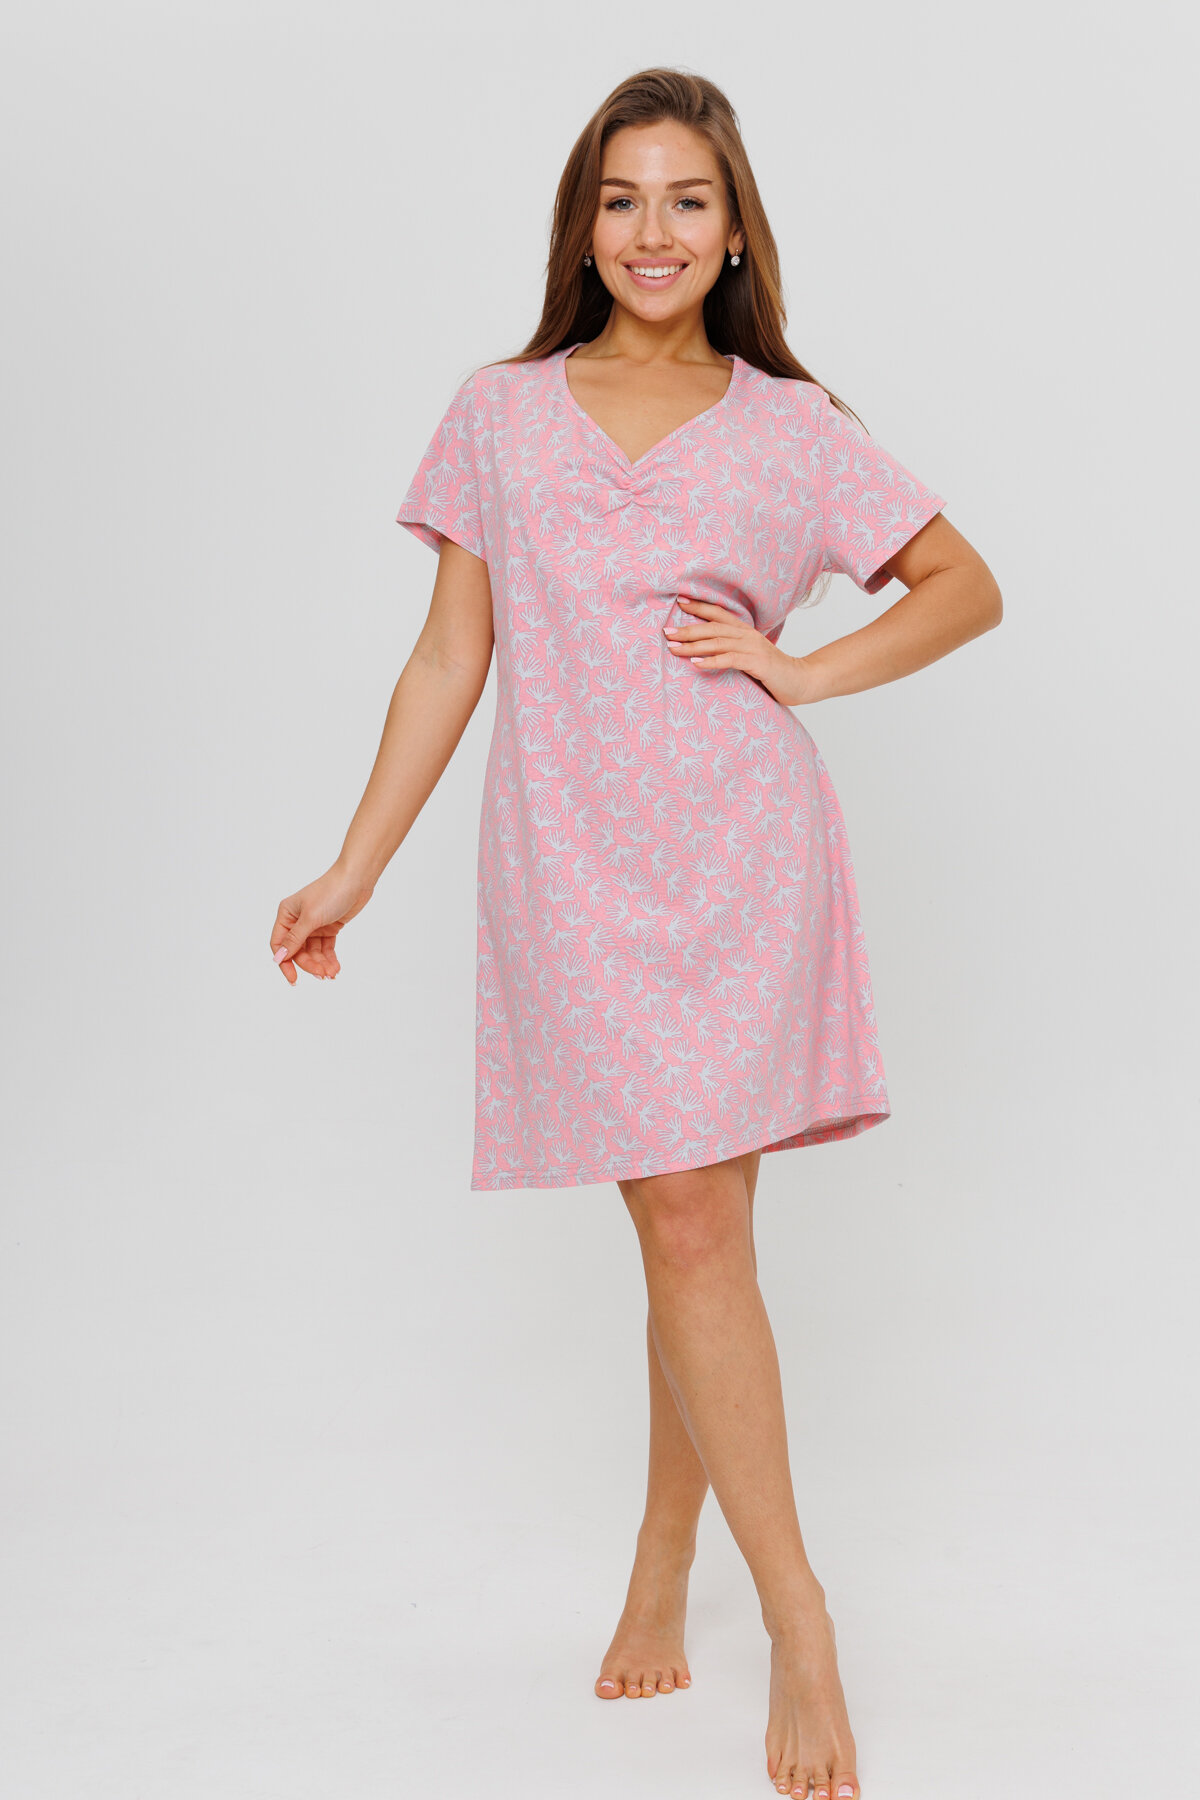 Женская ночная сорочка Modellini 1900/1 розовая, 48 размер - фотография № 1